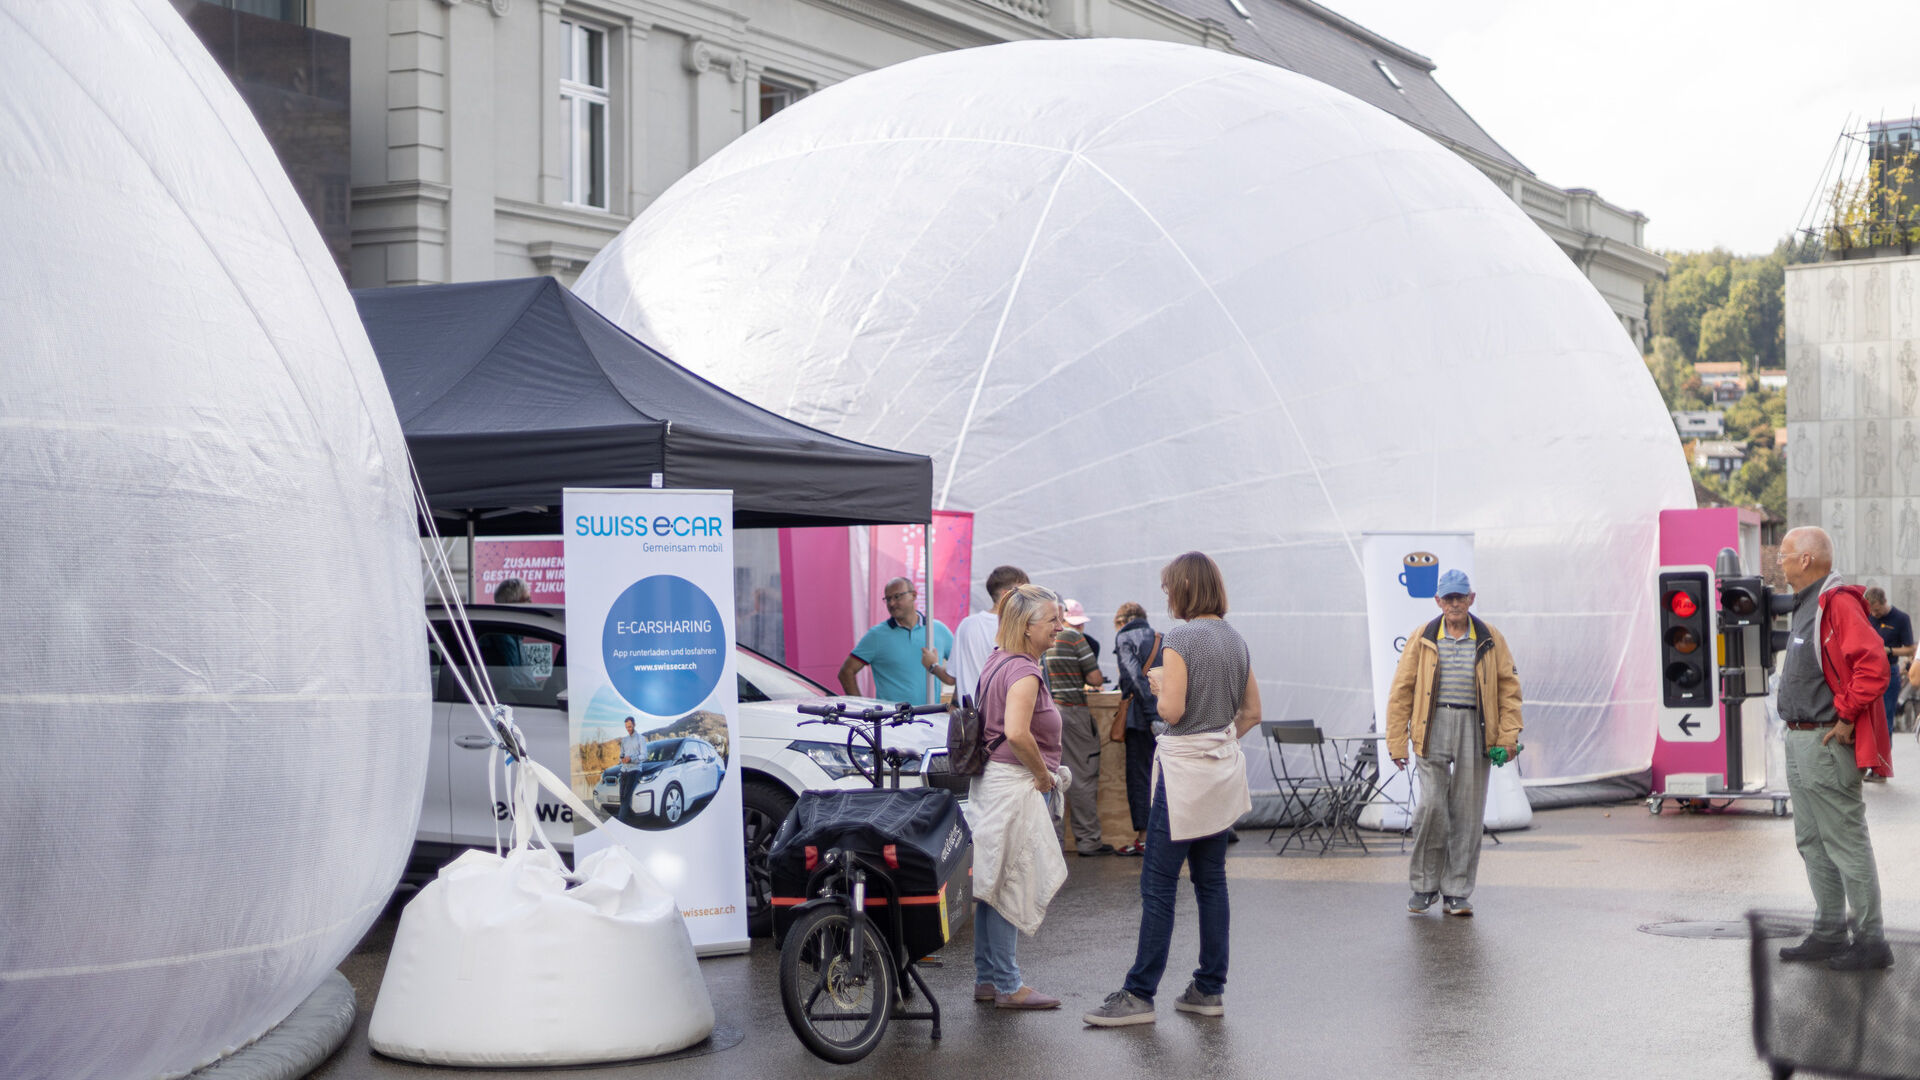 Le “Giornate Digitali Svizzere” 2022 hanno fatto tappa ad Aarau (Argovia), Basilea (Basilea Città) e Liestal (Basilea Campagna) dal 12 al 18 settembre